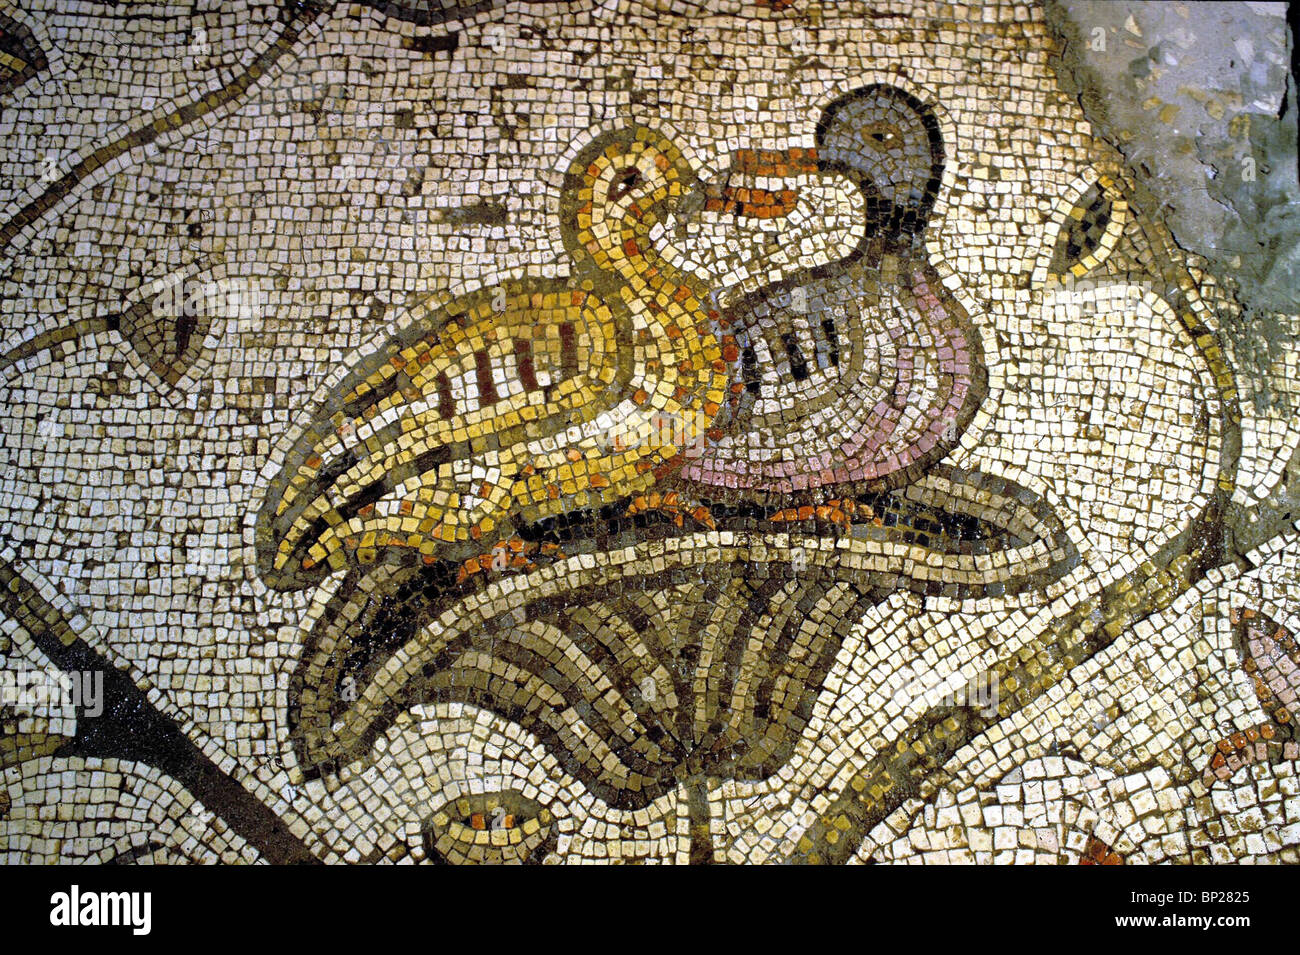 TABGHA, sur la mer de Galilée. Des scènes de la mosaïque byzantine marbre dépeignant la vie sauvage autour du lac. PIC : NICHÉE CANARDS Banque D'Images